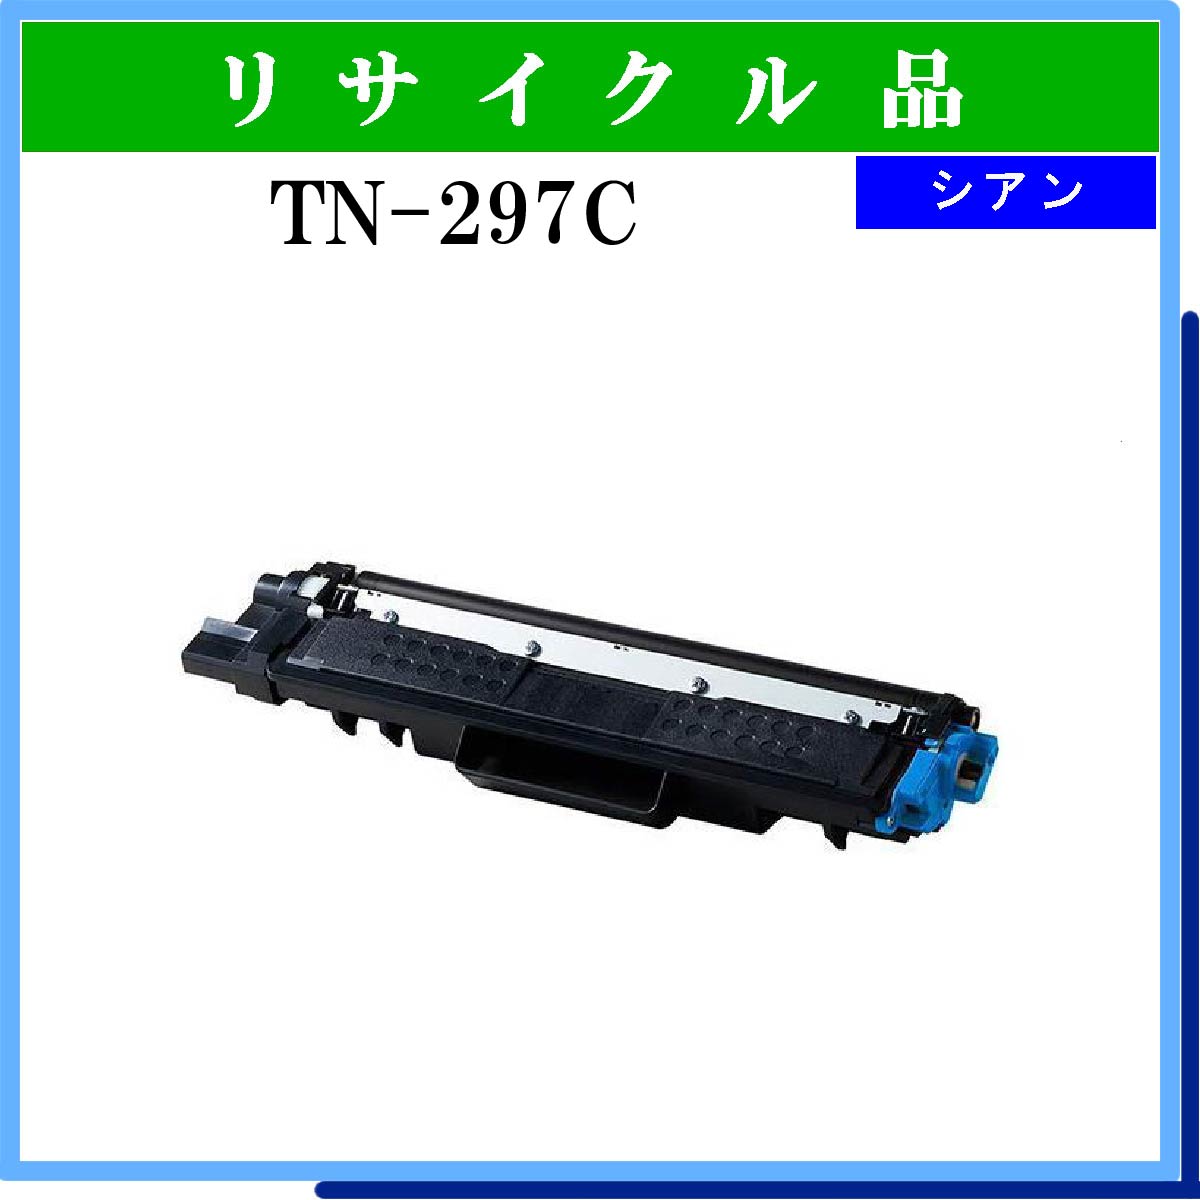 TN-297C